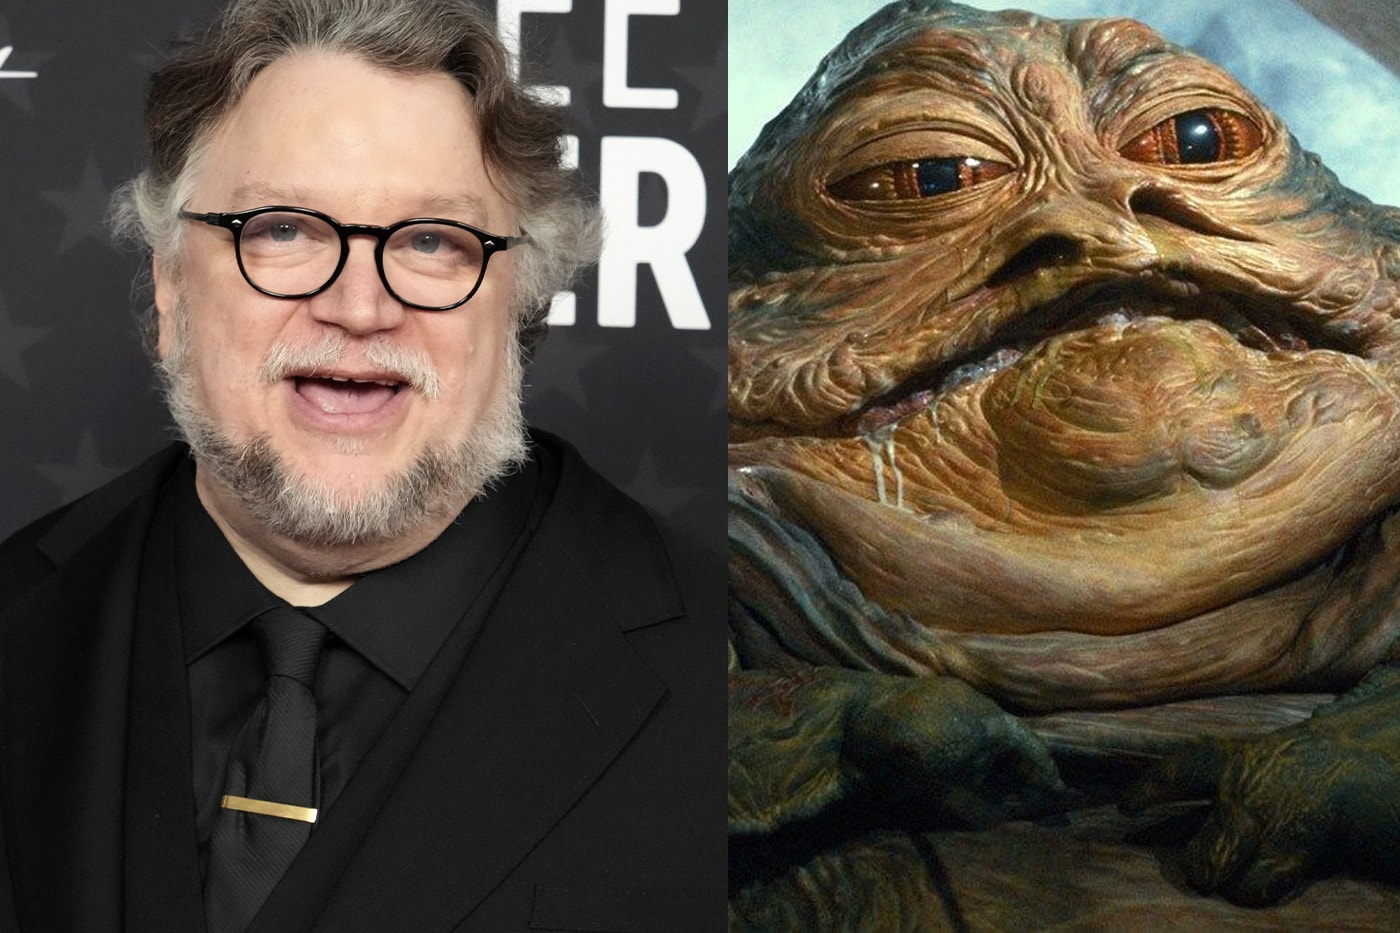 Guillermo Del Toro discusses Scrapped star wars Jabba the Hutt Film